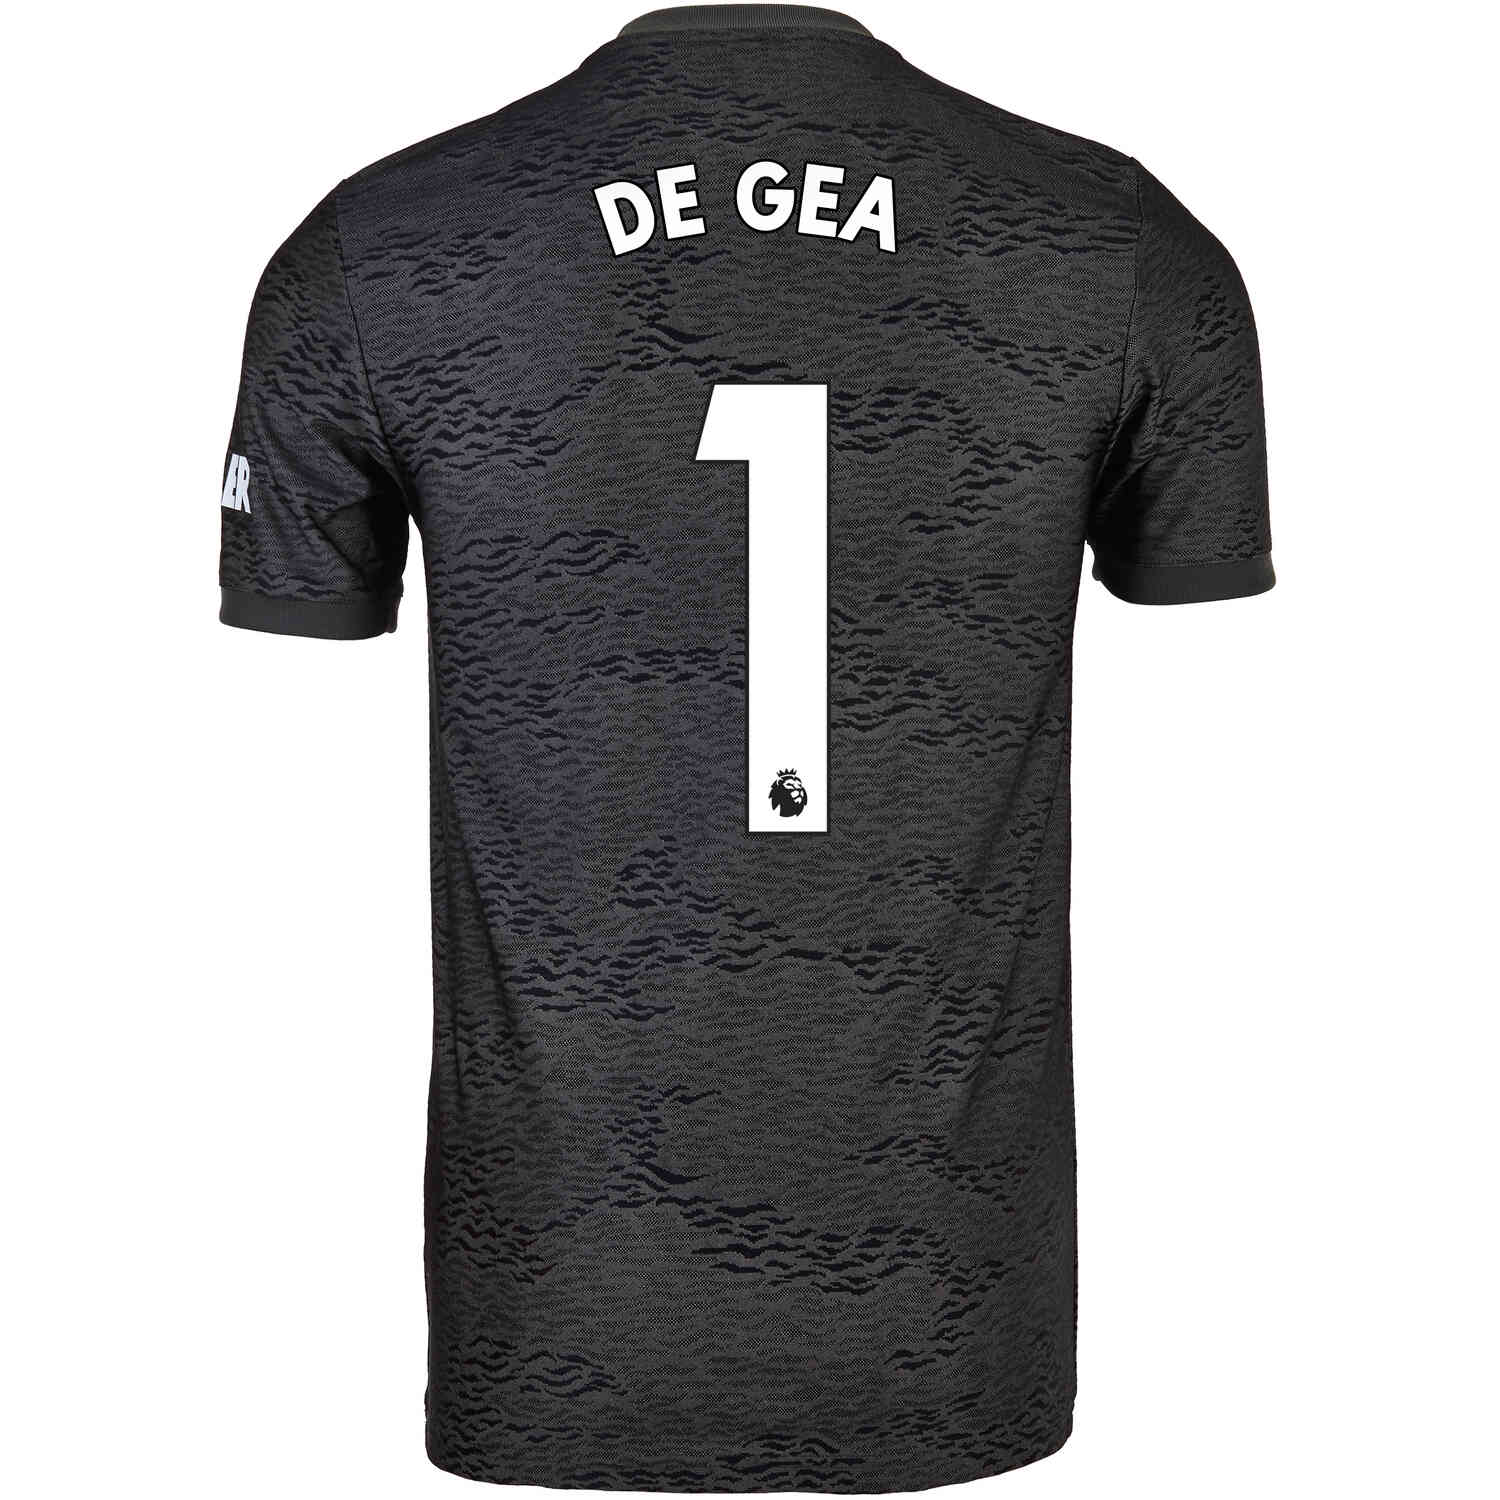 2020/21 Kids adidas David De Gea Manchester United Away Jersey ...